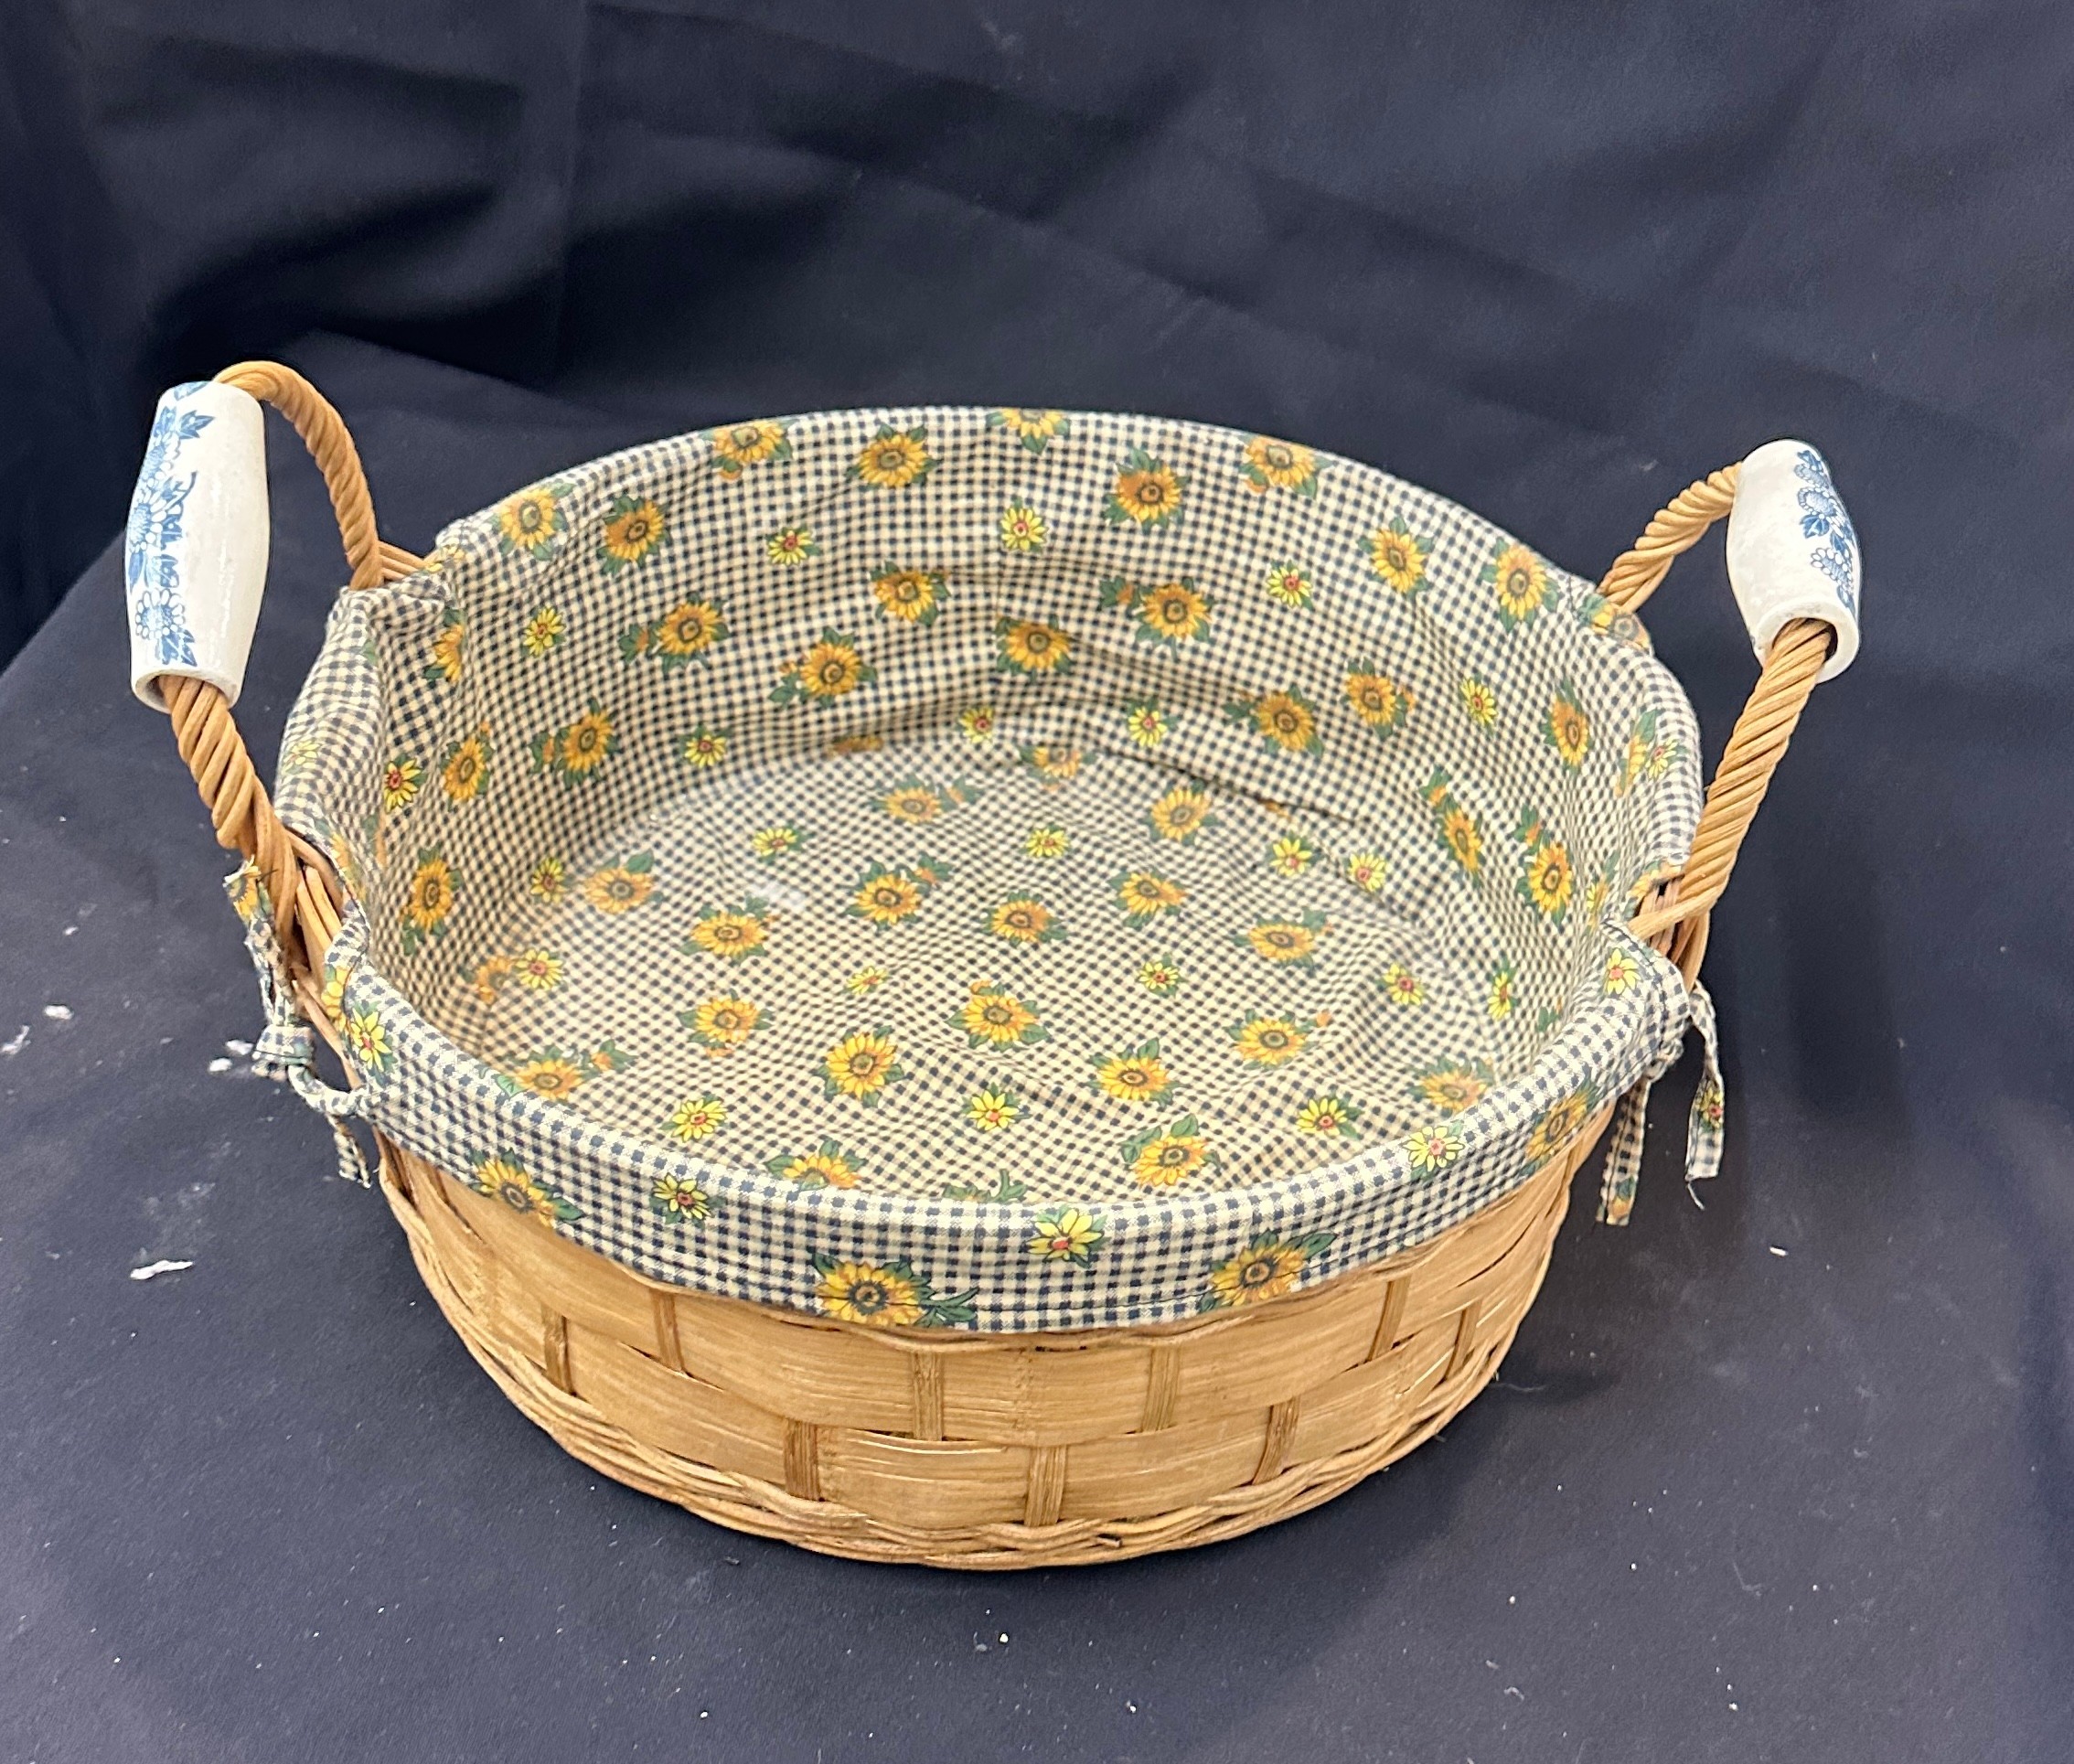 Vintage wicker basket with porcelain handles